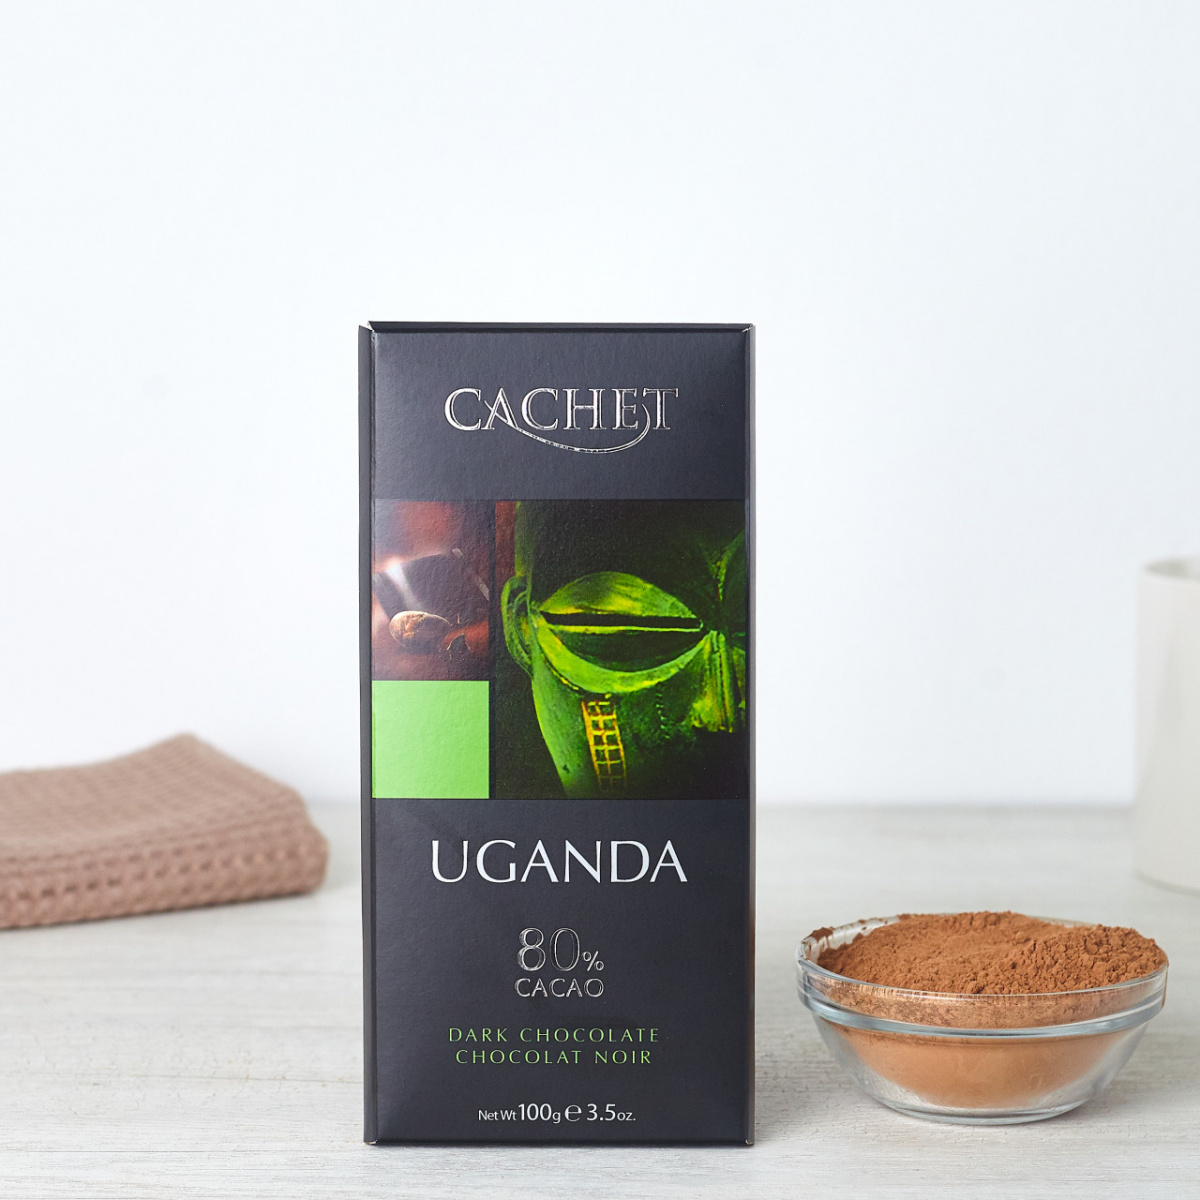 Црно чоколадо Уганда 80% какао